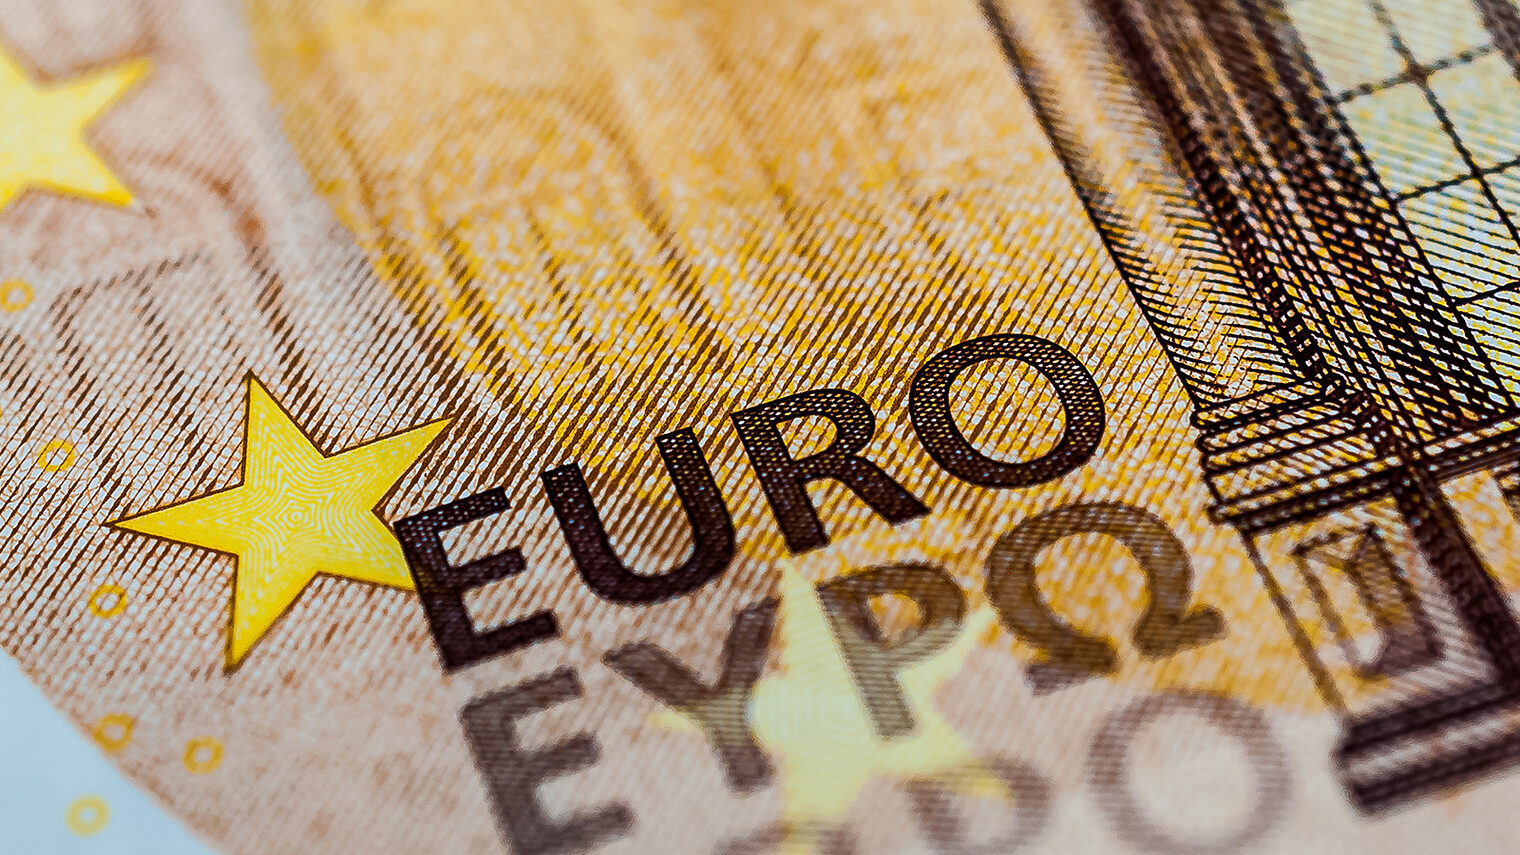 Euro-Note / Makroaufnahme eines Geldscheins. Bild: Stockfotos-MG / stock.adobe.com